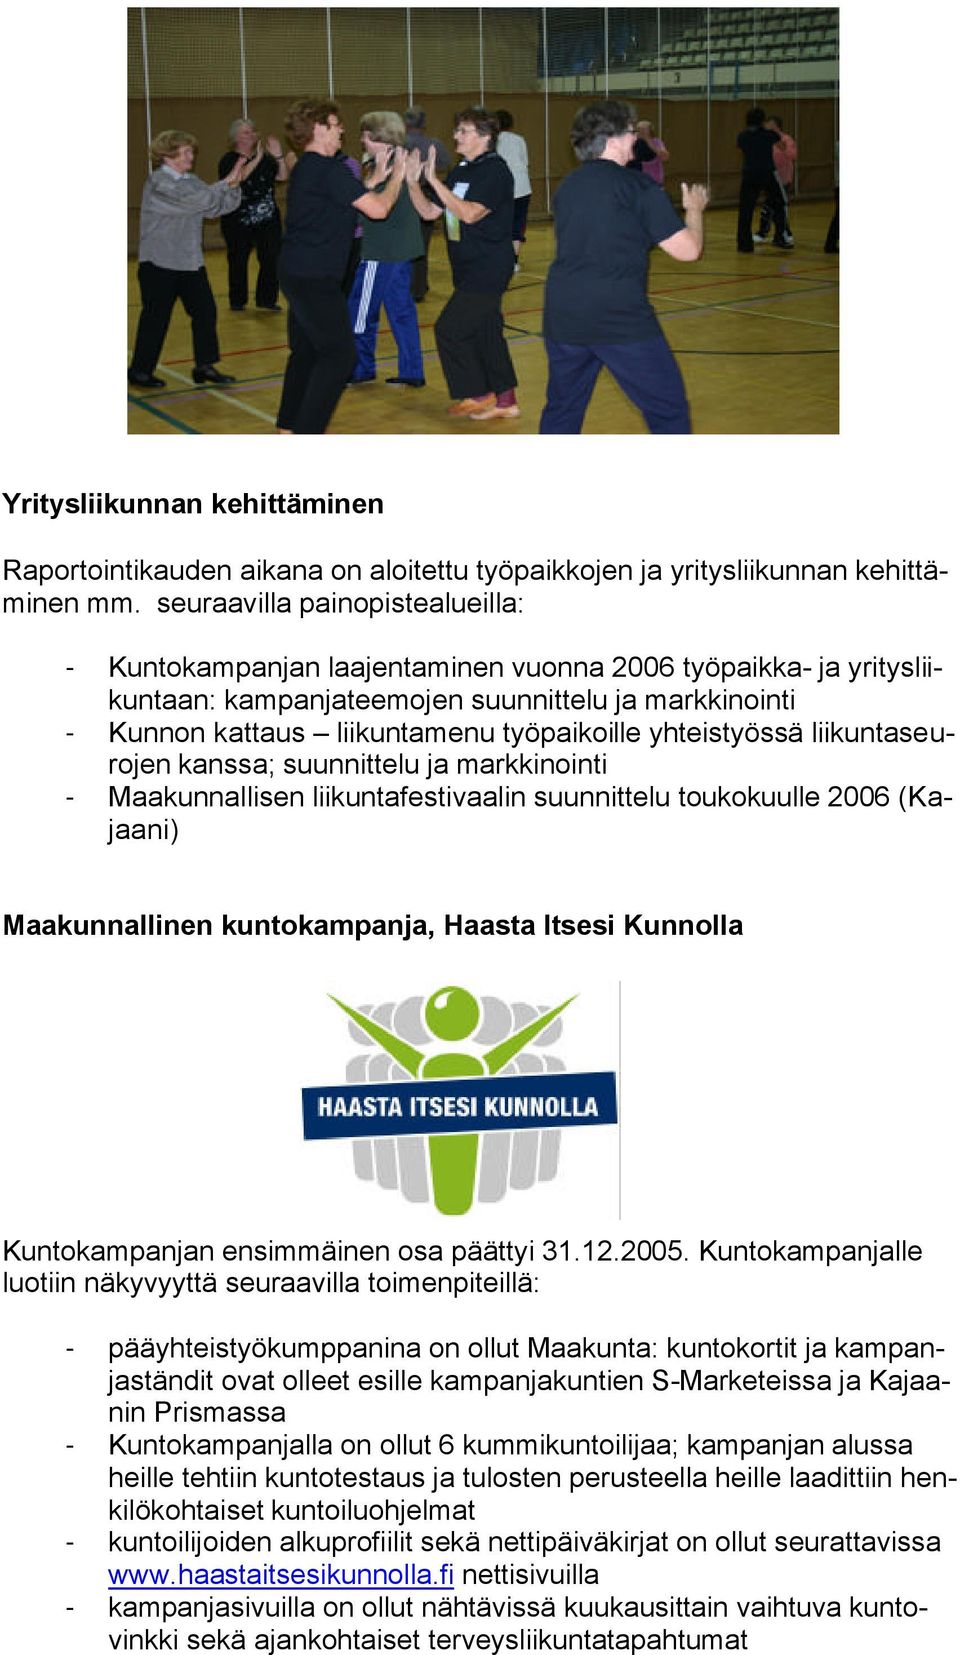 yhteistyössä liikuntaseurojen kanssa; suunnittelu ja markkinointi - Maakunnallisen liikuntafestivaalin suunnittelu toukokuulle 2006 (Kajaani) Maakunnallinen kuntokampanja, Haasta Itsesi Kunnolla